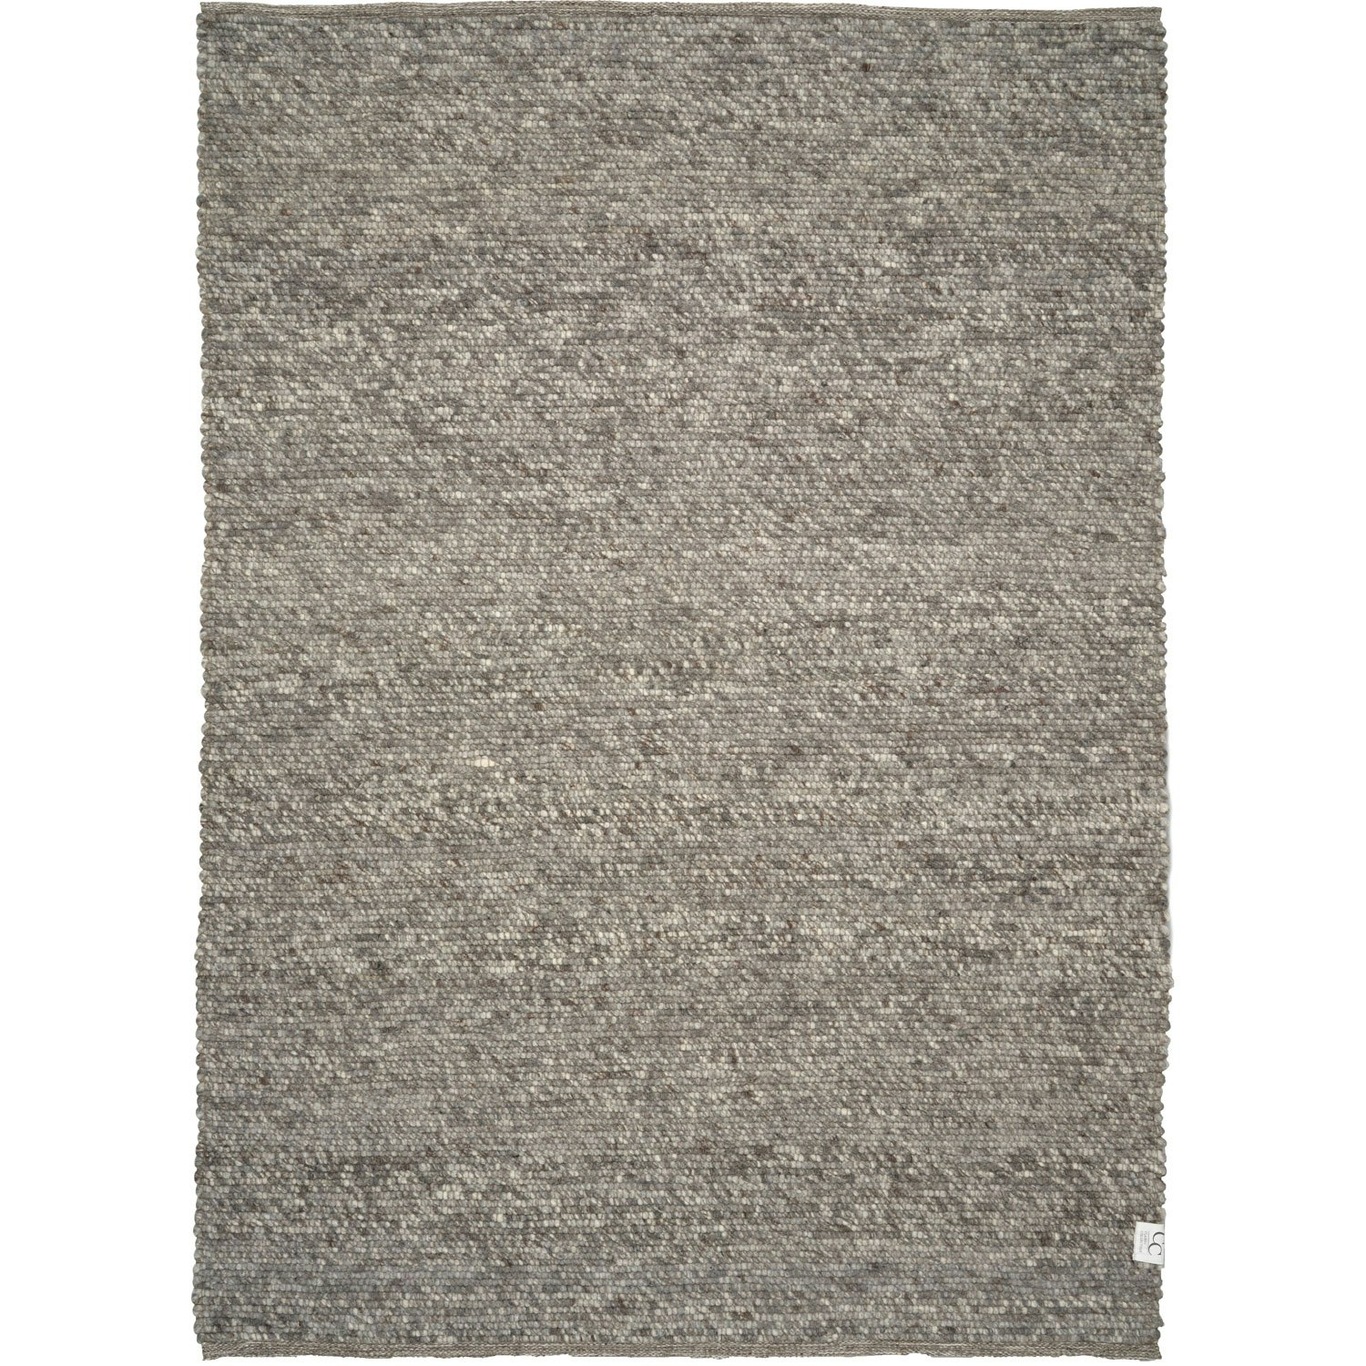 Merino Rug 170x230 cm, Grey